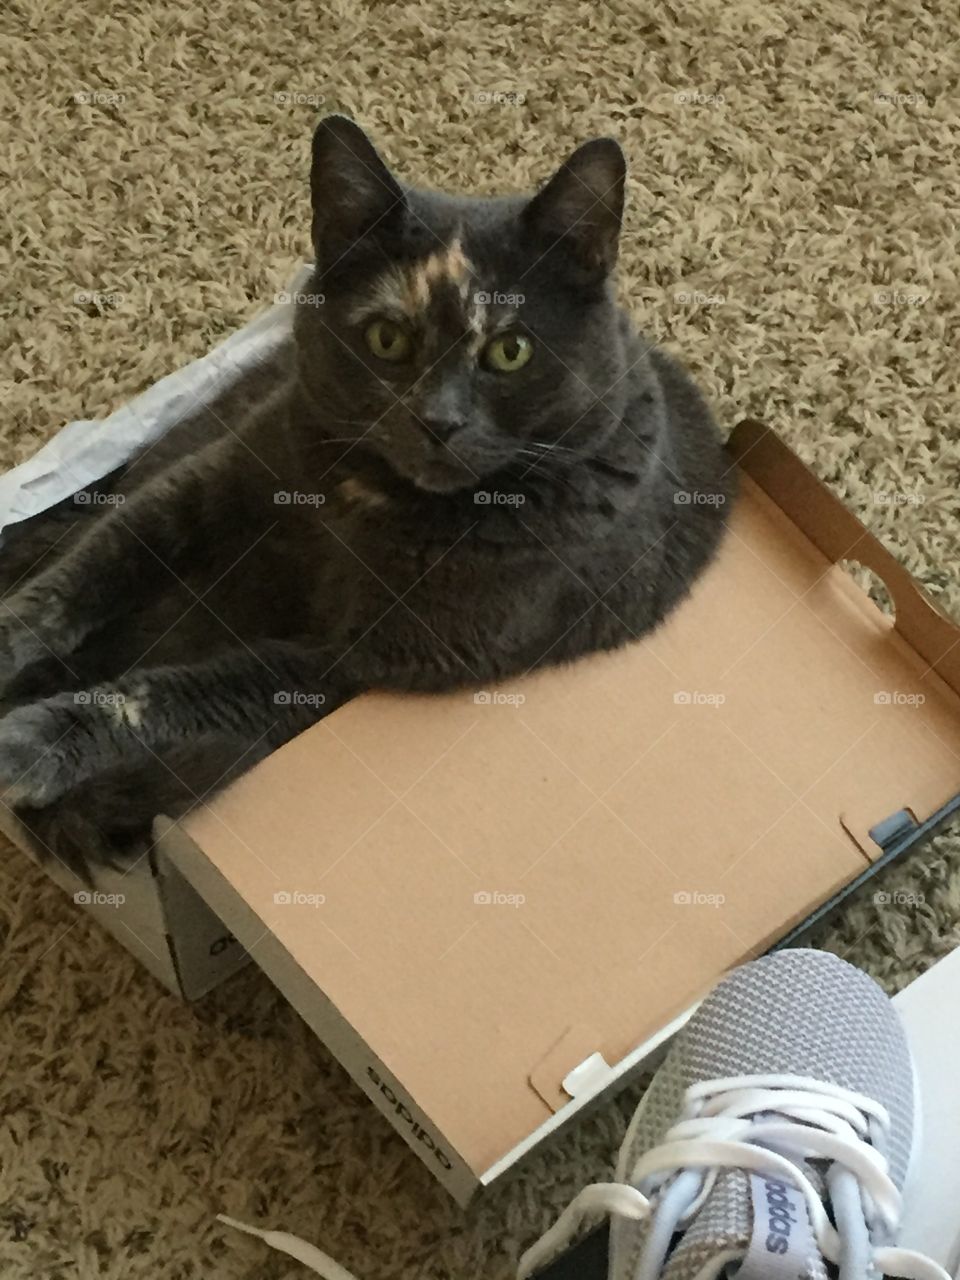 Cute cat in a shoebox 